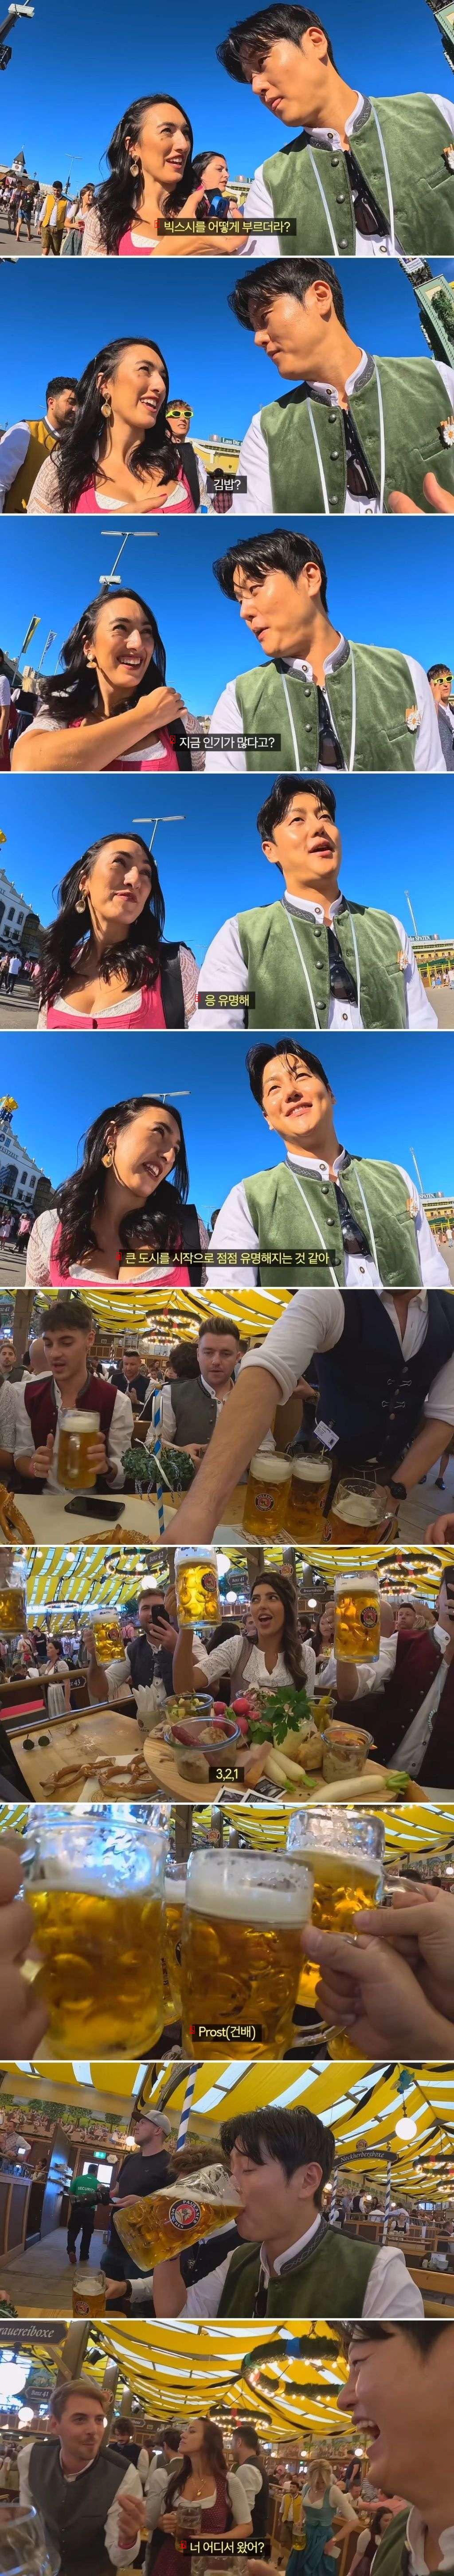 독일 맥주 축제에 참가한 한국 남자